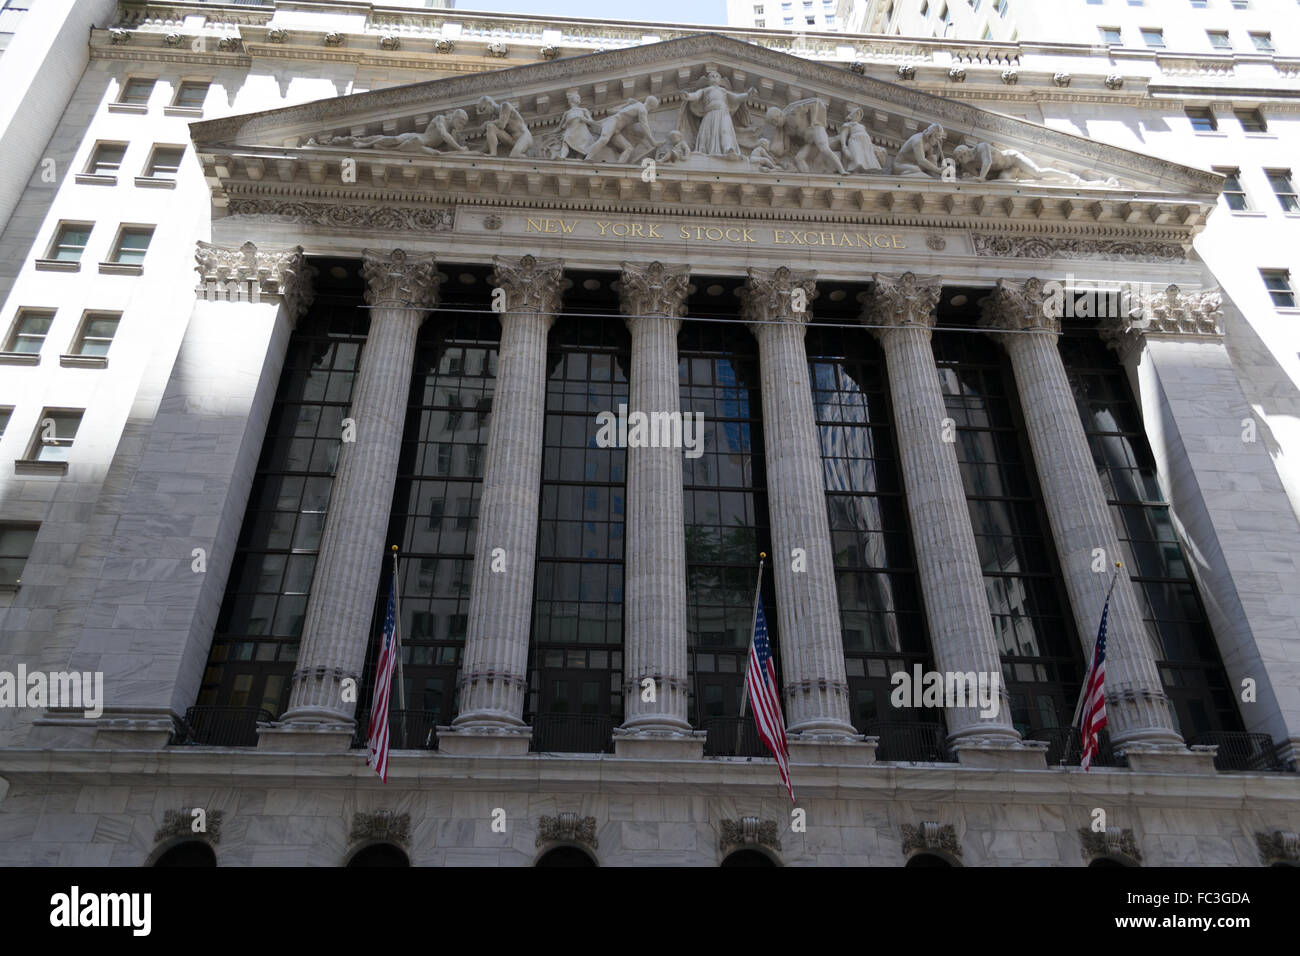 NYC stock exchange building Stock Photo